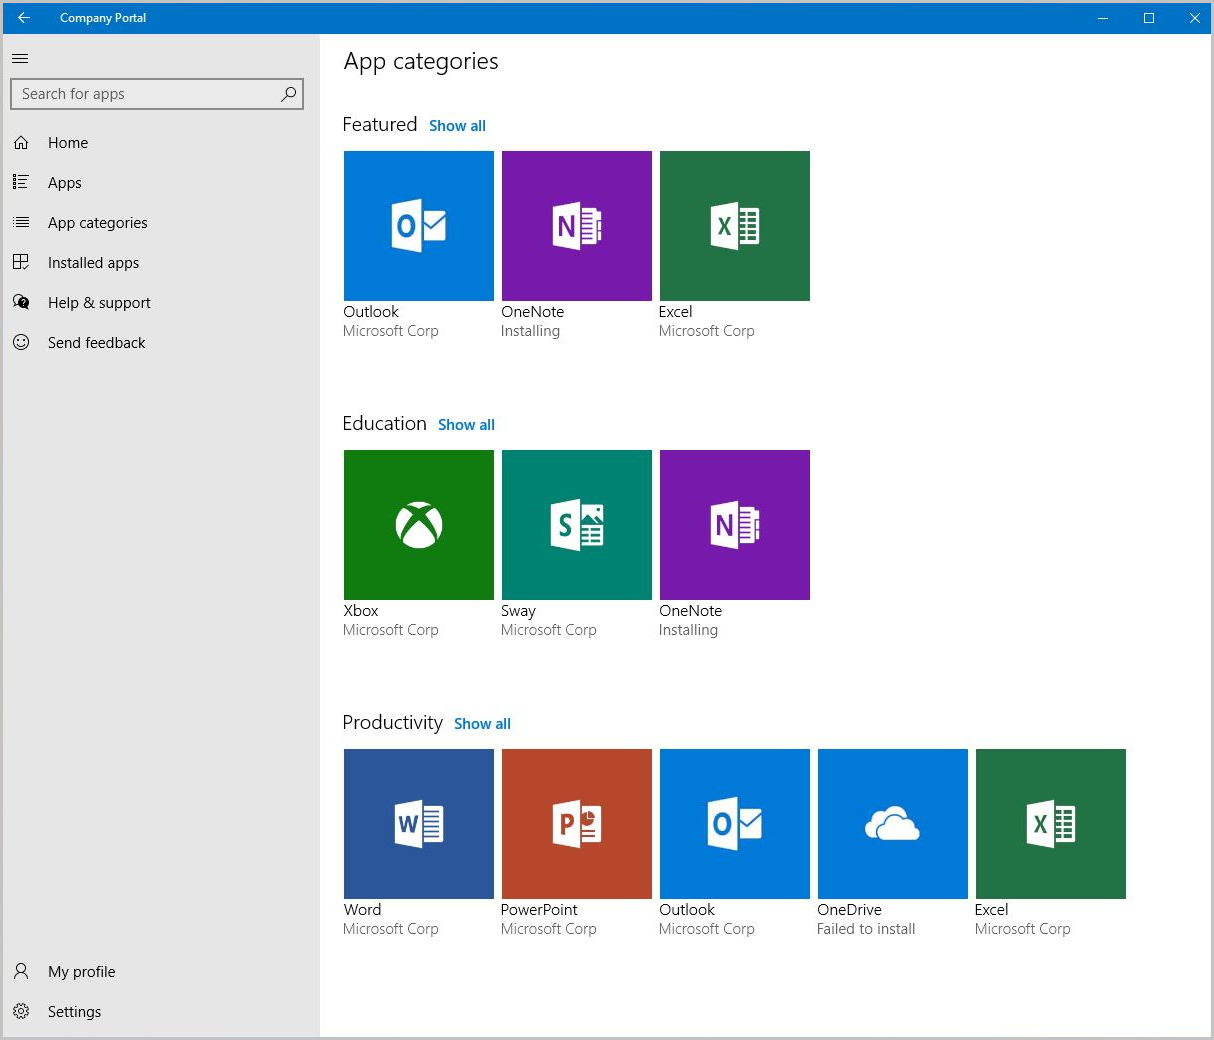 Schermopname van Bedrijfsportal voor Windows 10, scherm App-categorieën.